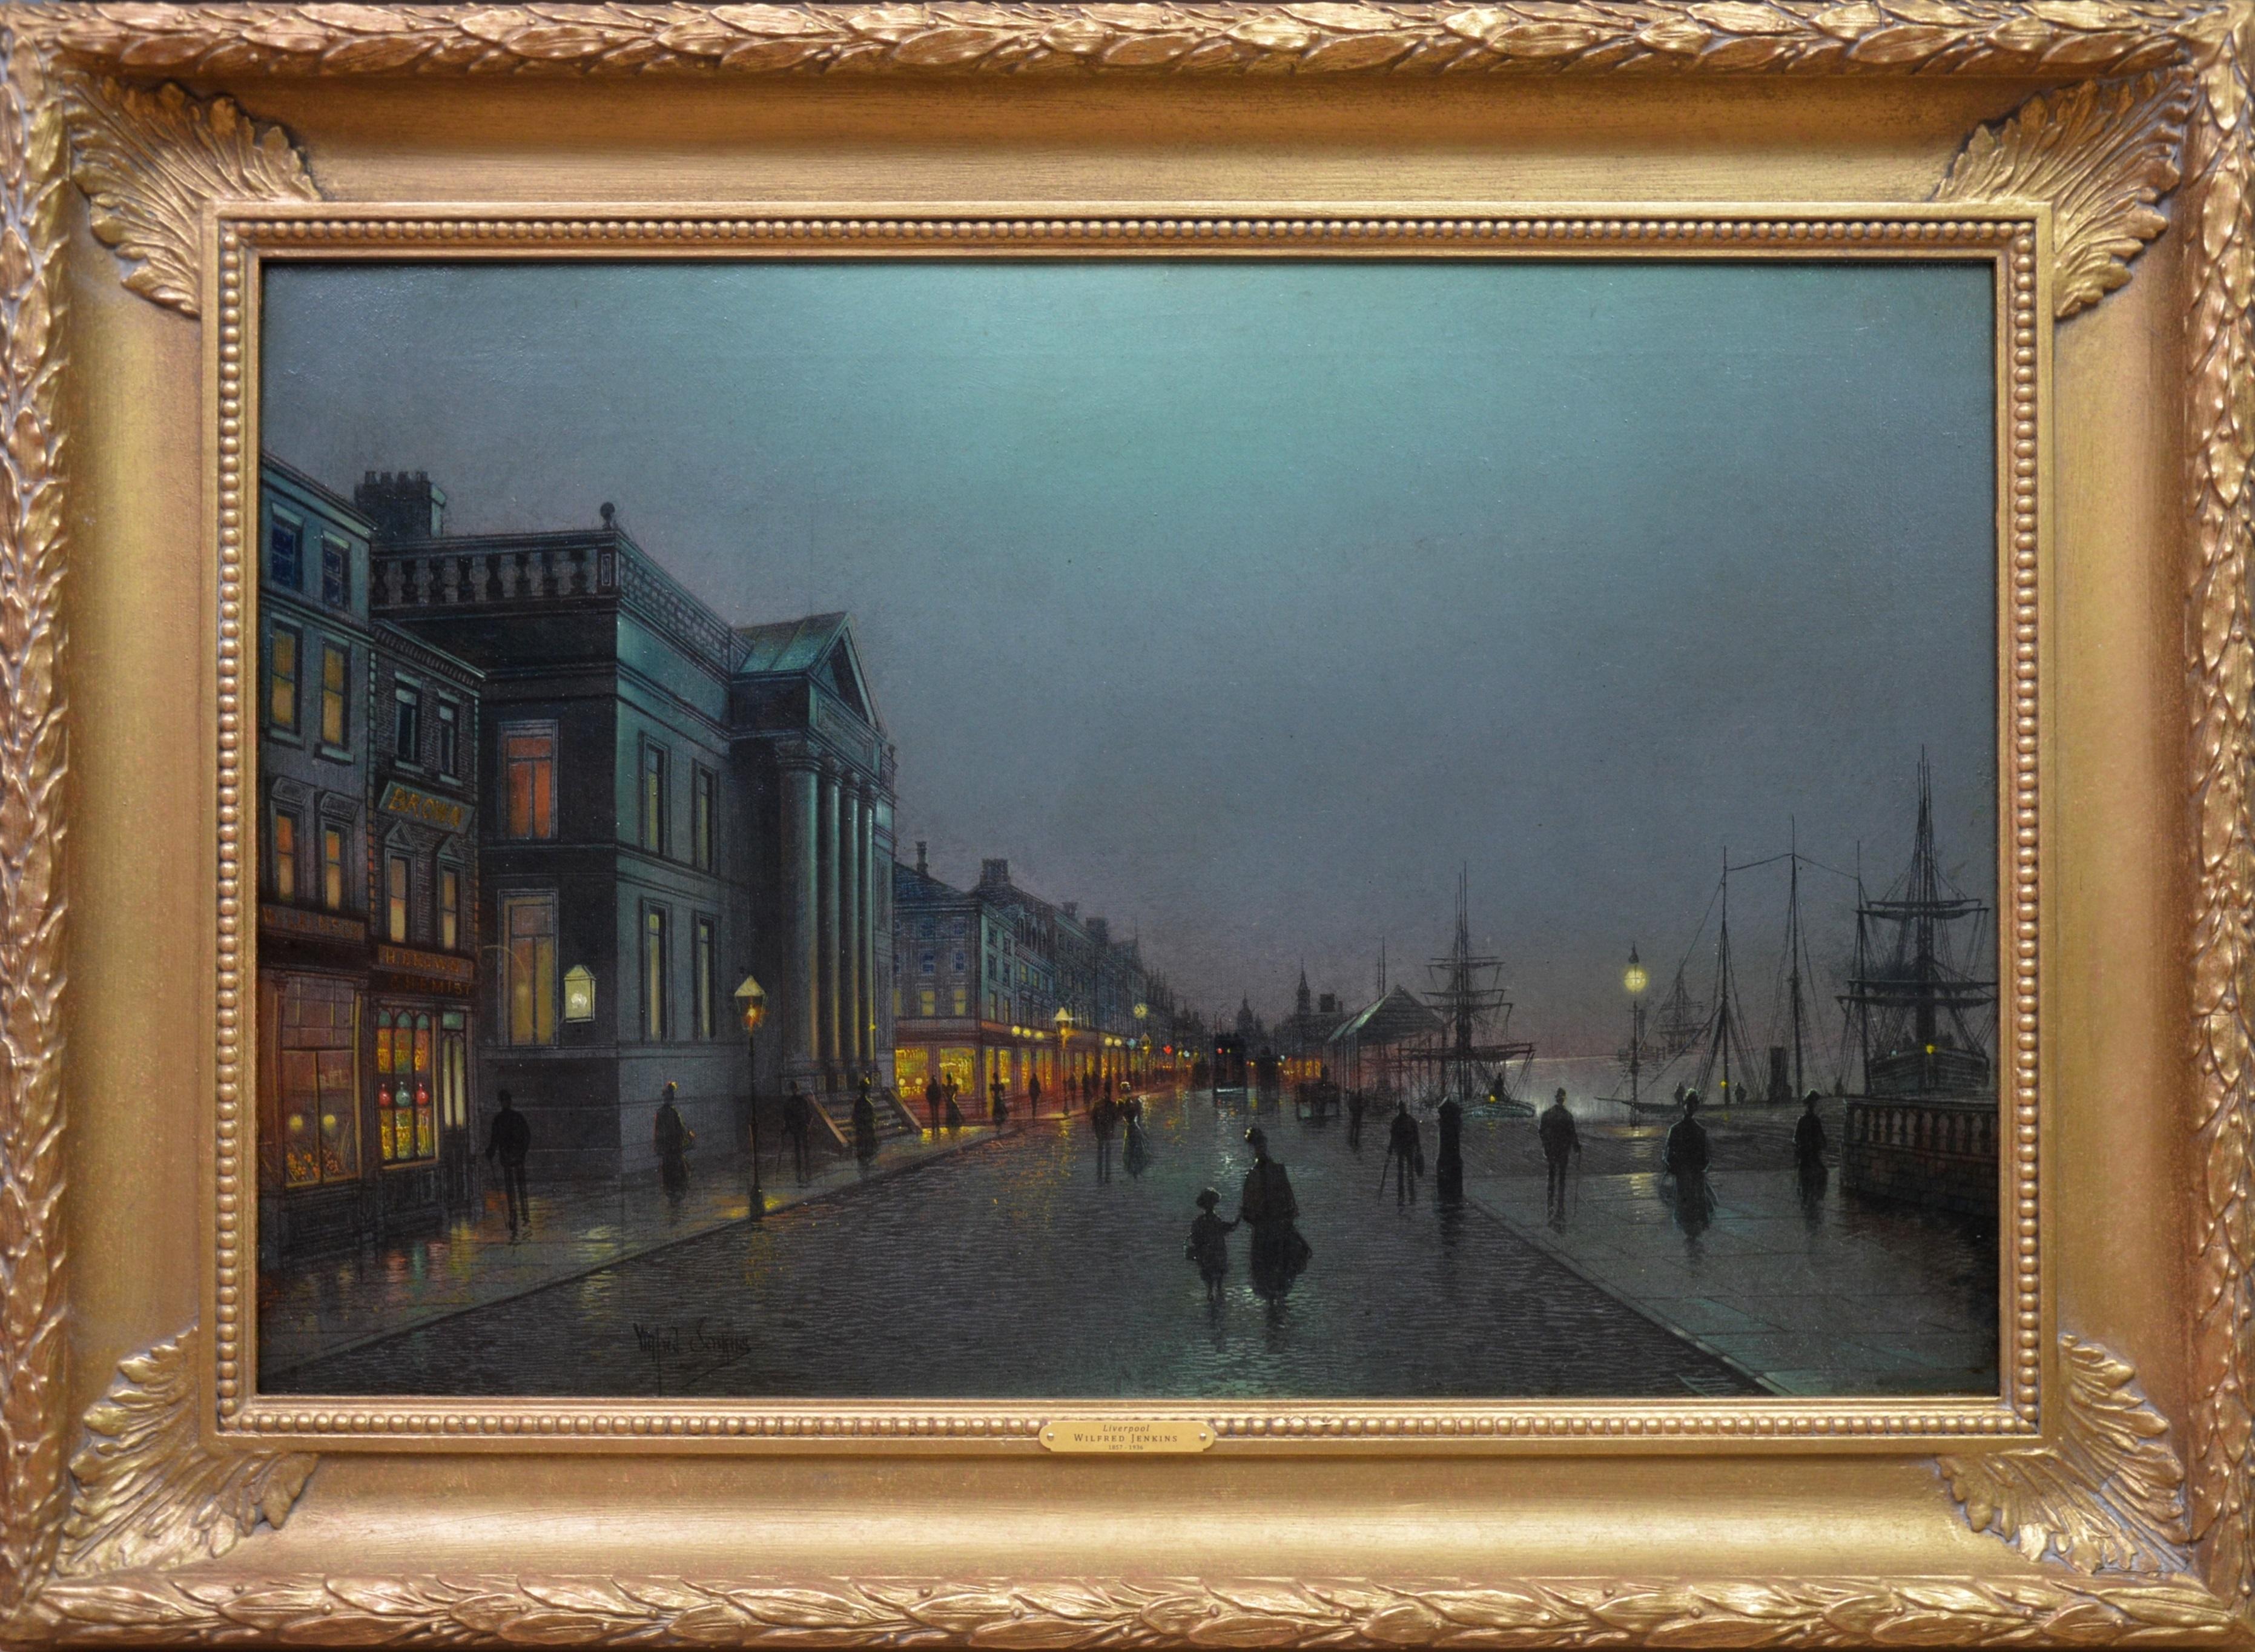 Landscape Painting Wilfred Jenkins - Peinture à l'huile du 19ème siècle - Scène de clair de lune d'Atkinson Grimshaw - Liverpool Dockside